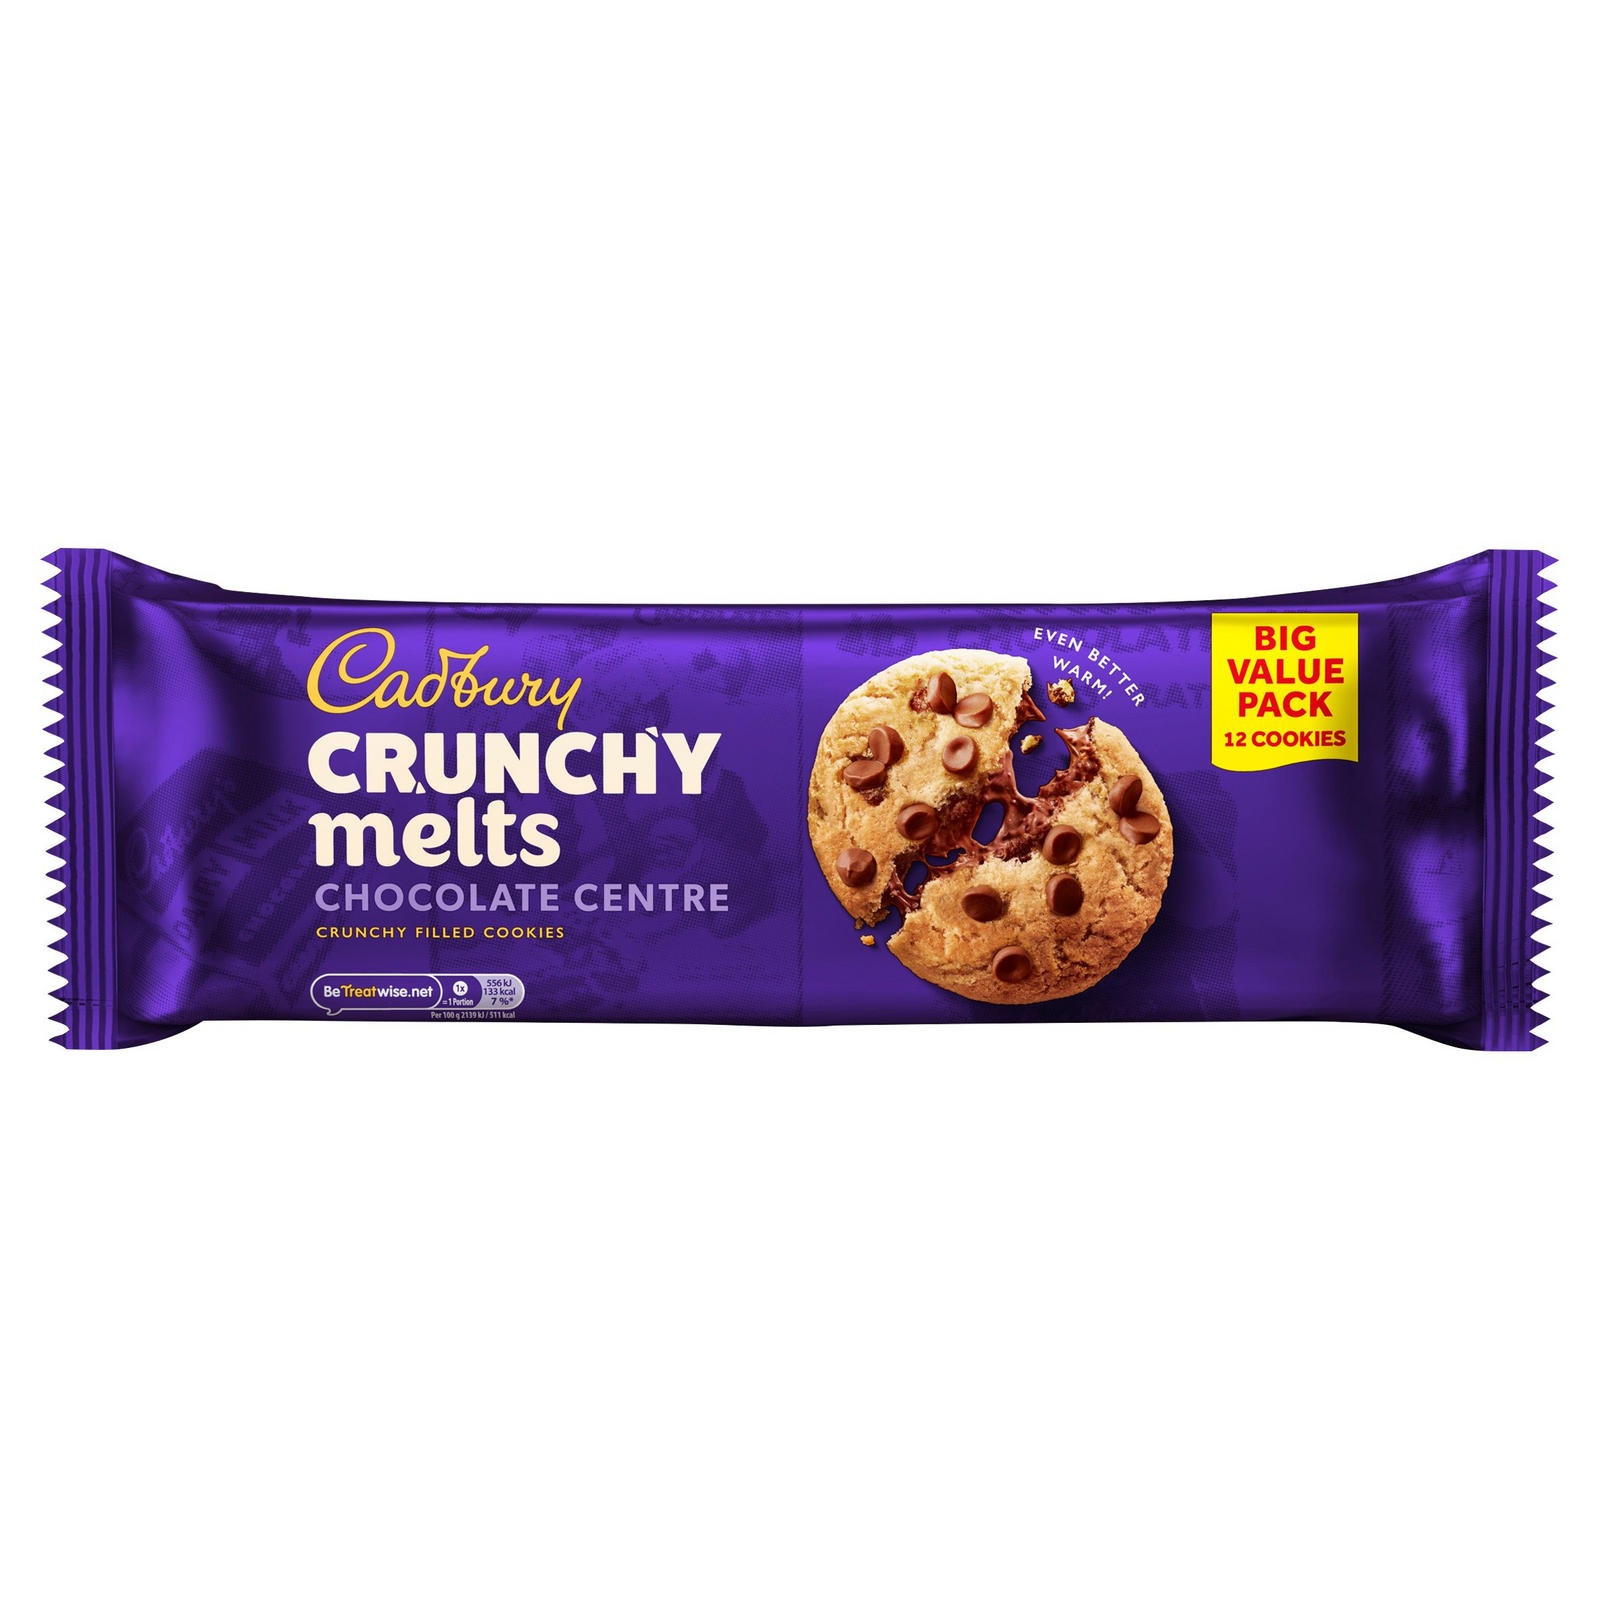 Eine Packung mit 12 Cadbury Crunchy Melt Cookies kostet in Island nur 2,25 £